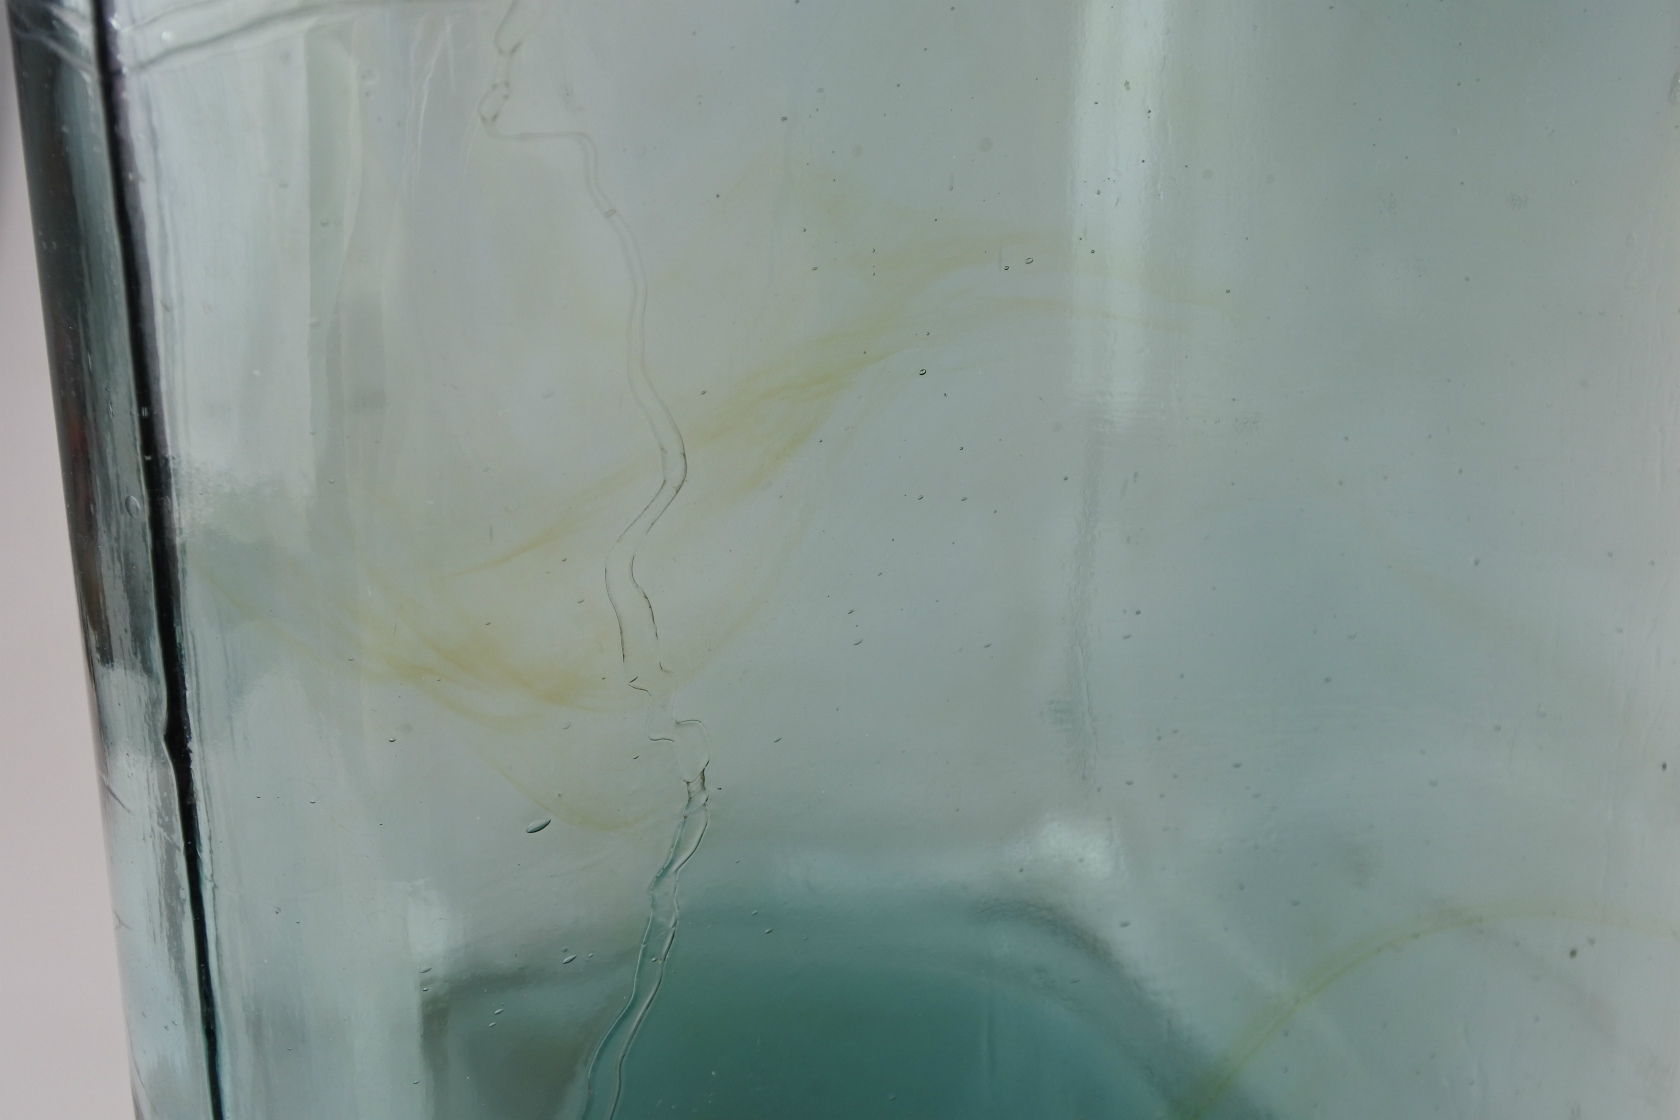 vi-seaweedbottleglass-nocap